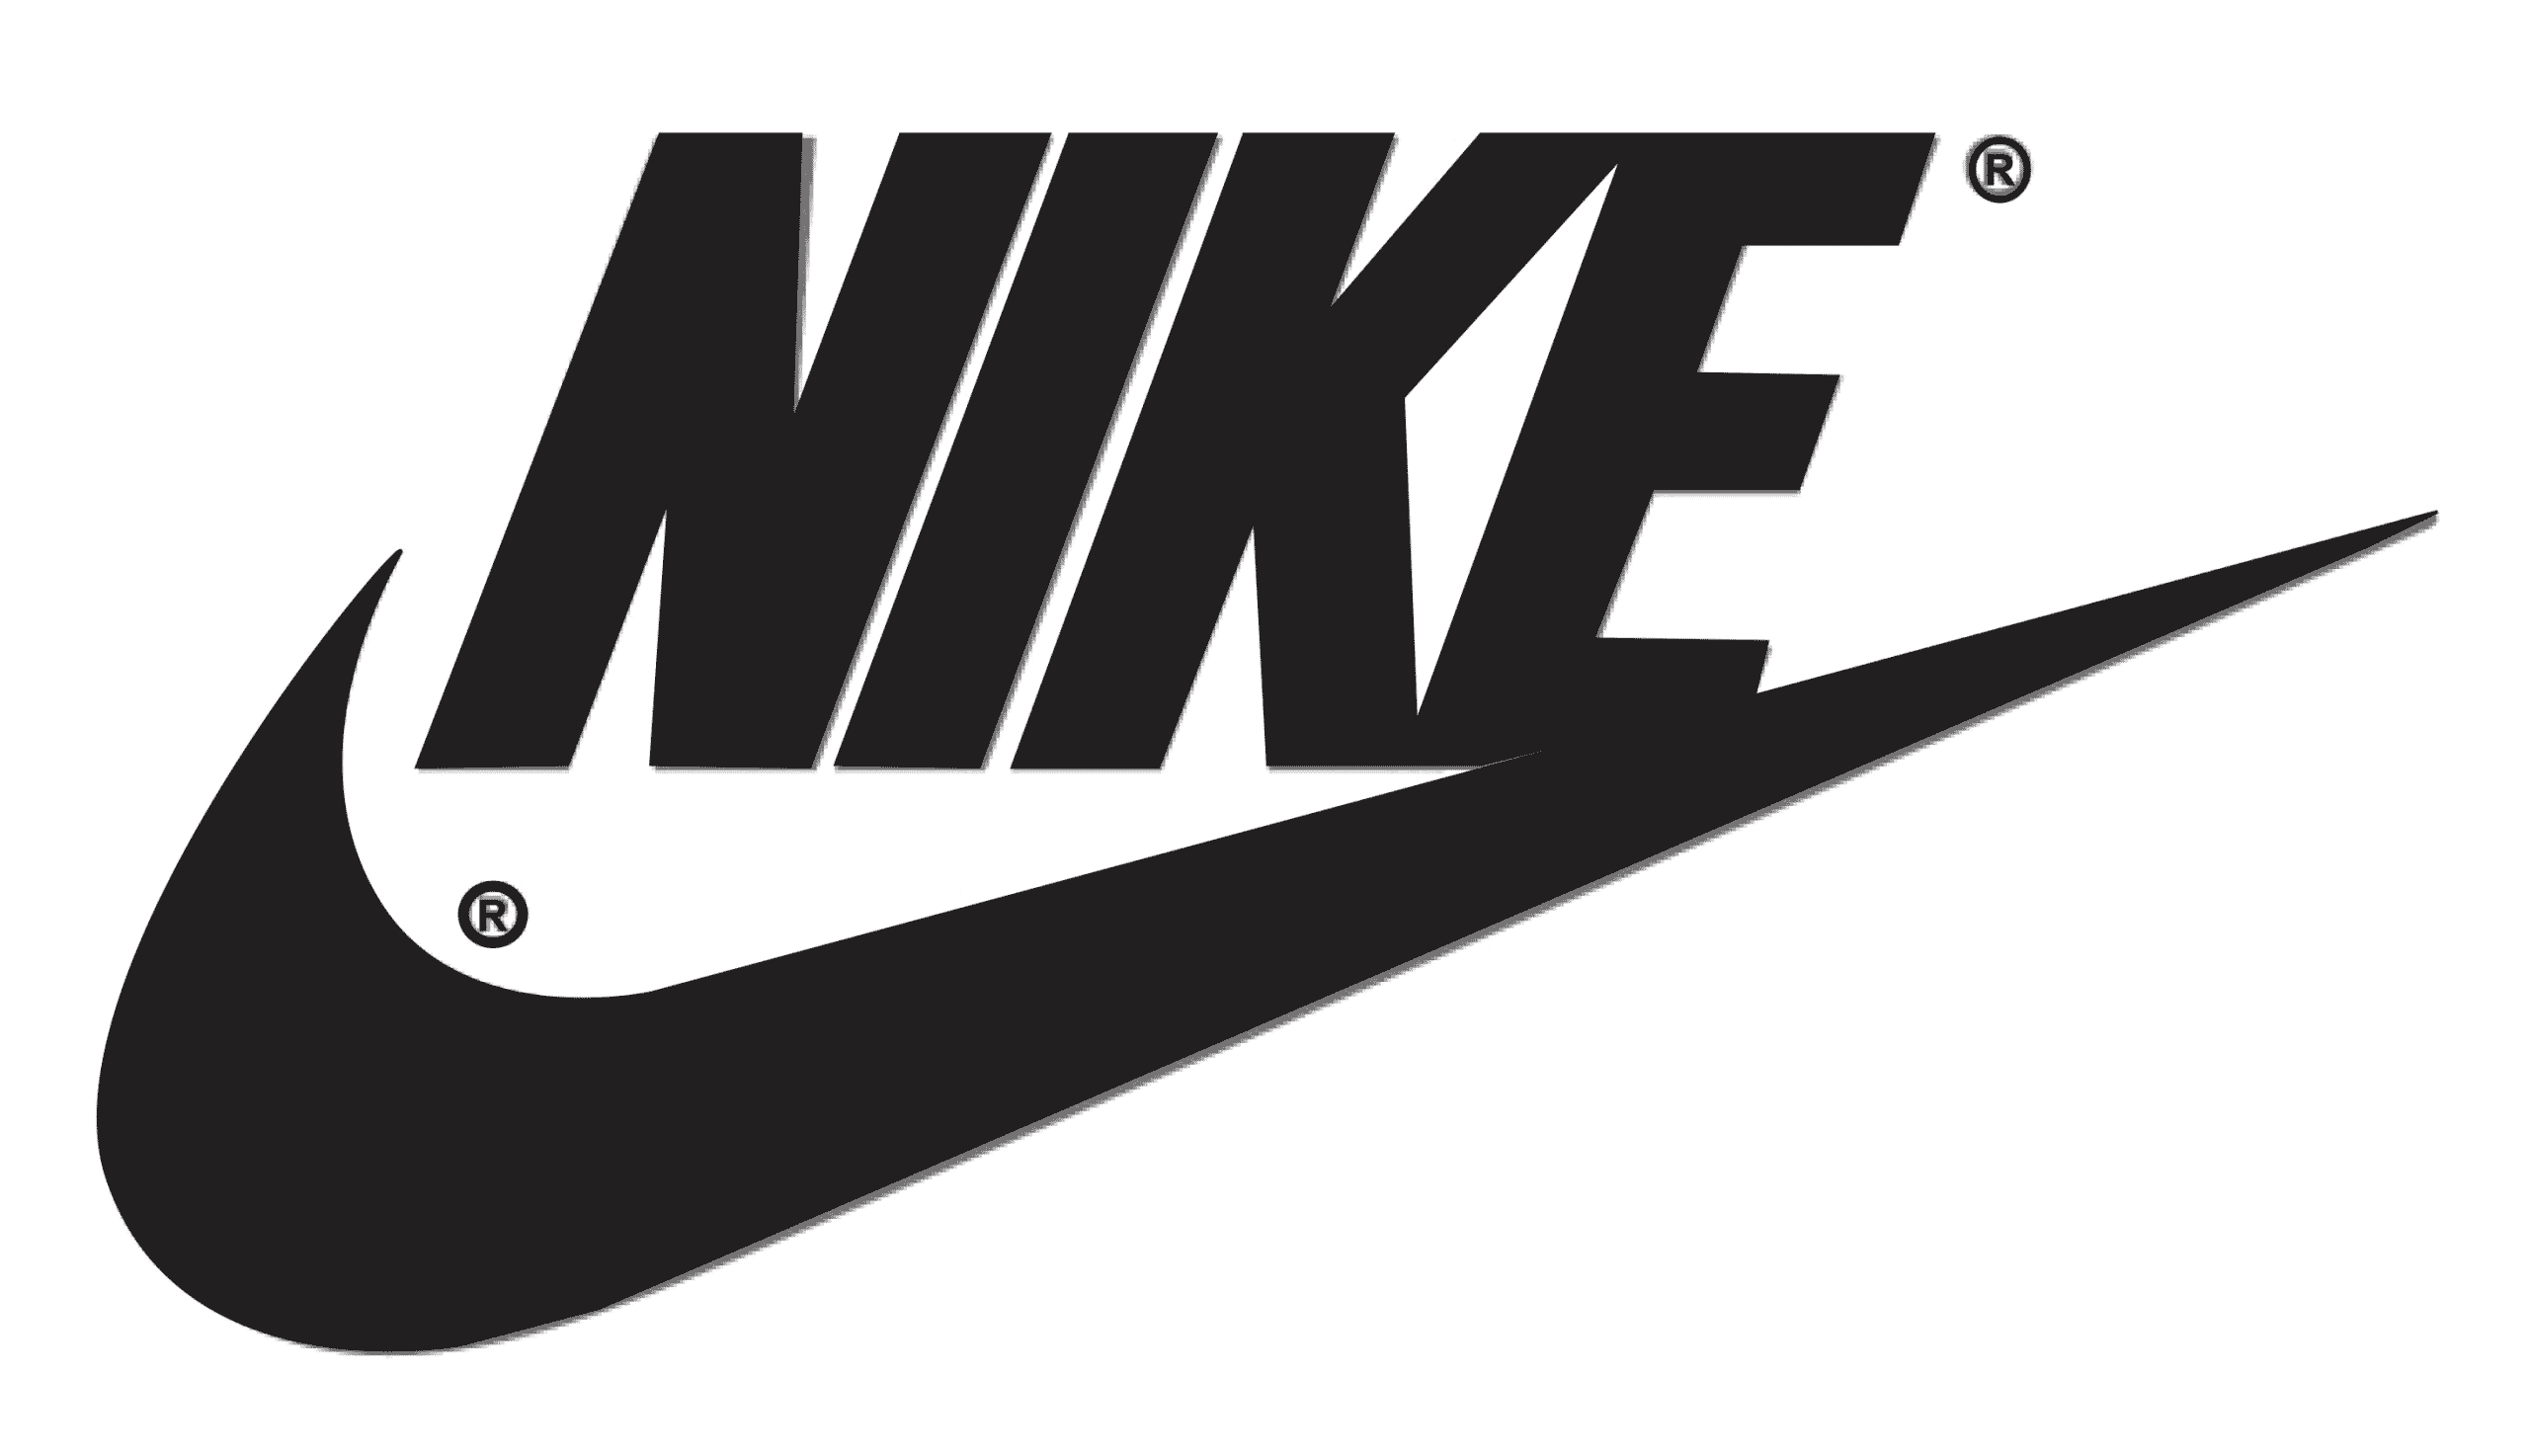 Pourquoi avoir choisi le nom de Nike ?